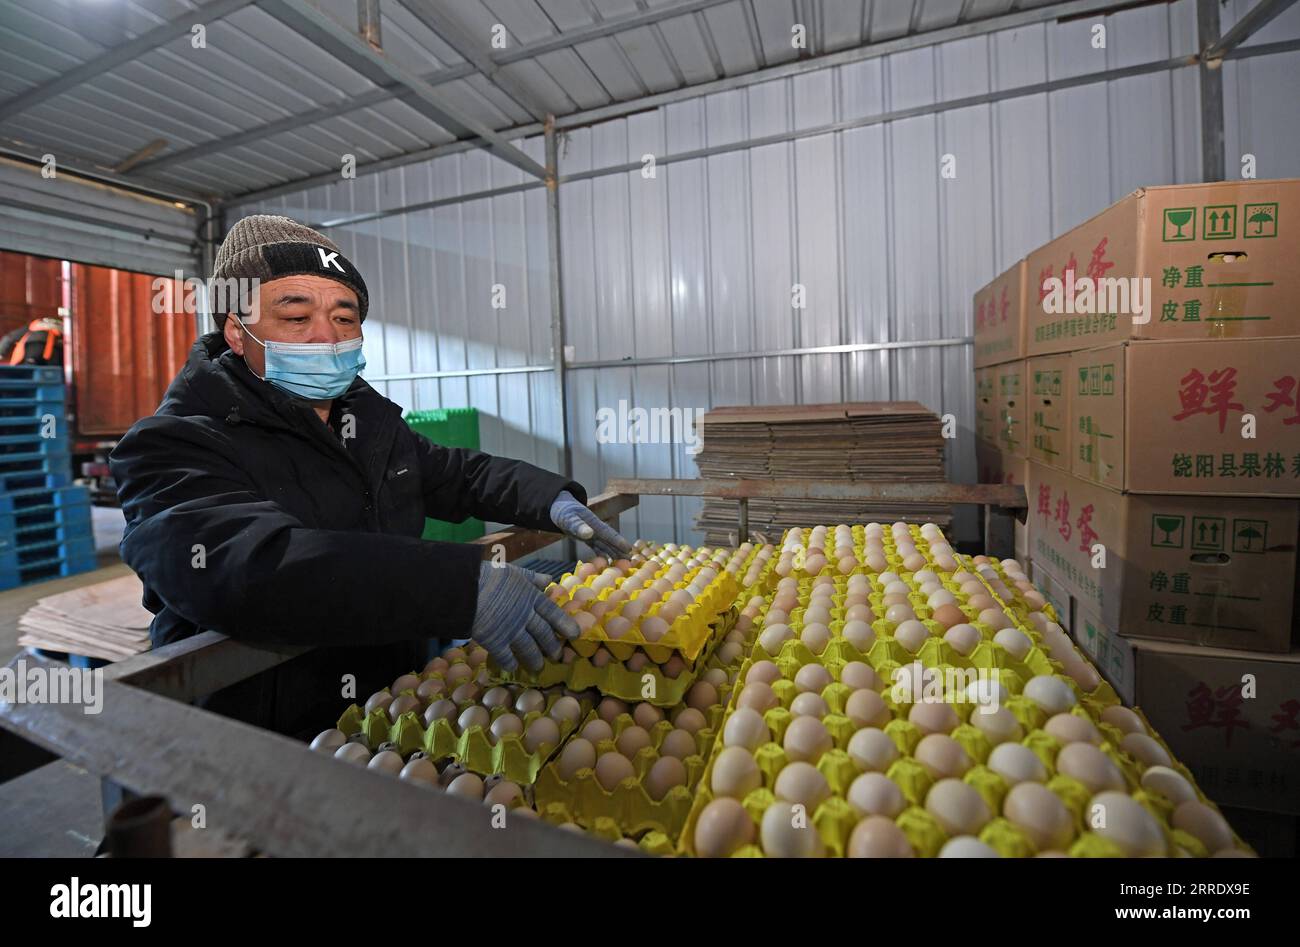 220111 -- TIANJIN, le 11 janvier 2022 -- un ouvrier trie des œufs sur un marché dans le nord de la Chine, Tianjin, le 11 janvier 2022. La municipalité de Tianjin de Chine du Nord, qui a été témoin de la dernière résurgence du COVID-19, a lancé un mécanisme de réponse d urgence pour garantir l approvisionnement en produits de première nécessité. Selon le bureau du commerce municipal de Tianjin, les autorités locales ont mobilisé les principaux fournisseurs de gros, supermarchés et marchés de légumes pour ajouter des stocks afin de faire face à la demande du marché pour la viande, les œufs et les légumes. Actuellement, les principaux marchés de gros de la ville pour les produits agricoles ont Banque D'Images